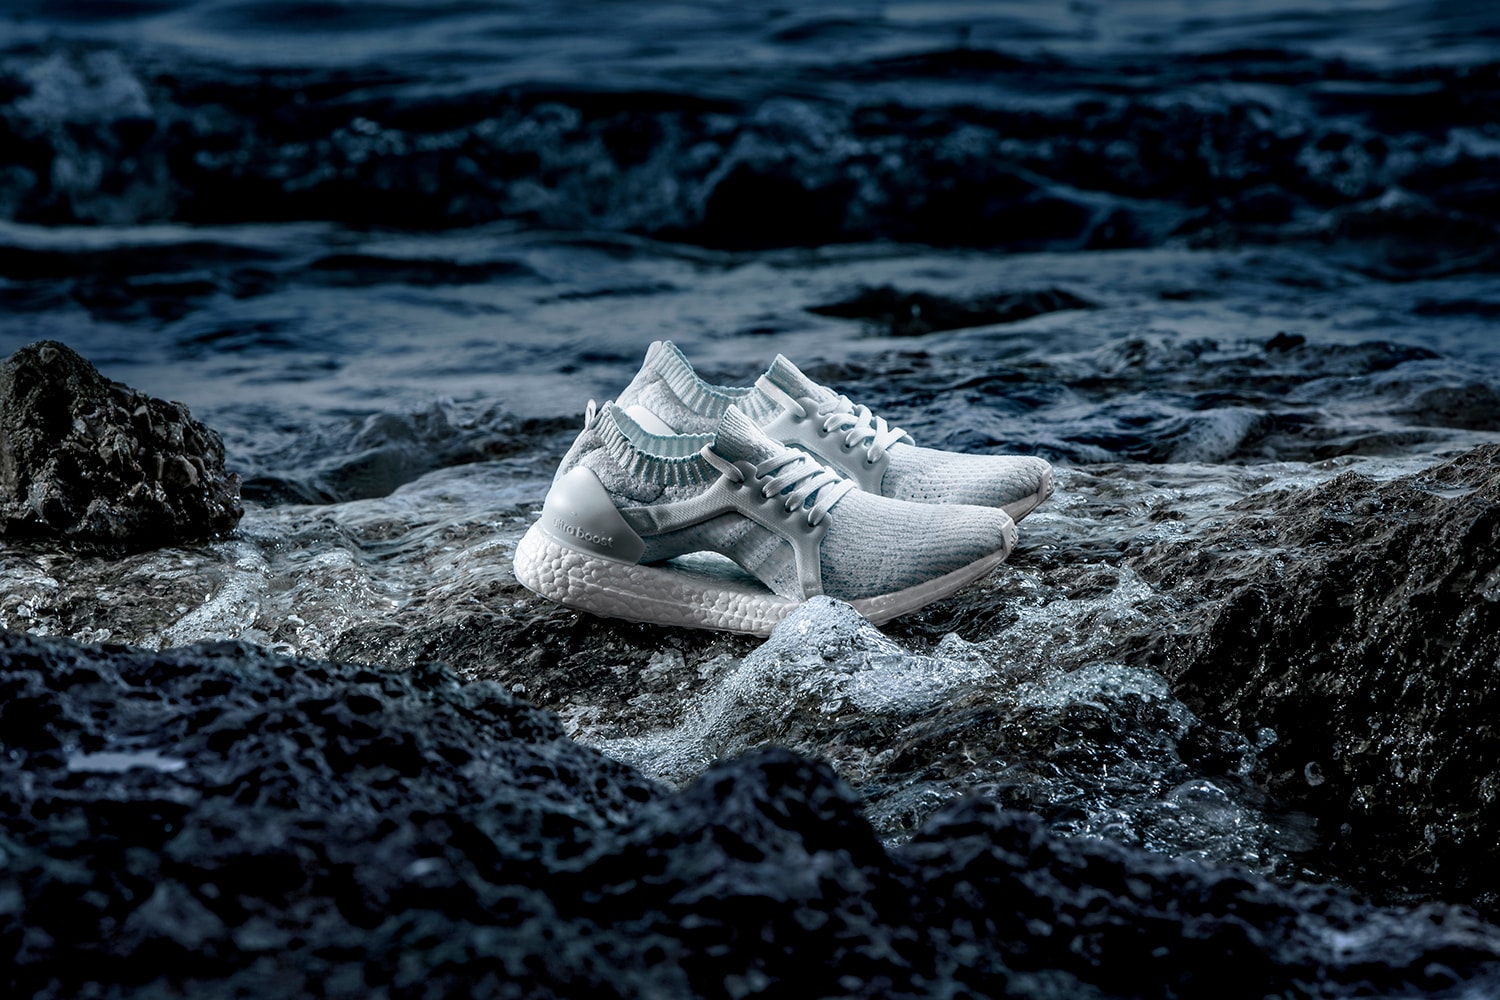 아디다스 x 팔리 '코랄 블리치' 환경보호 컬렉션 2017 adidas parley ocean nature preservation collaboration 2017